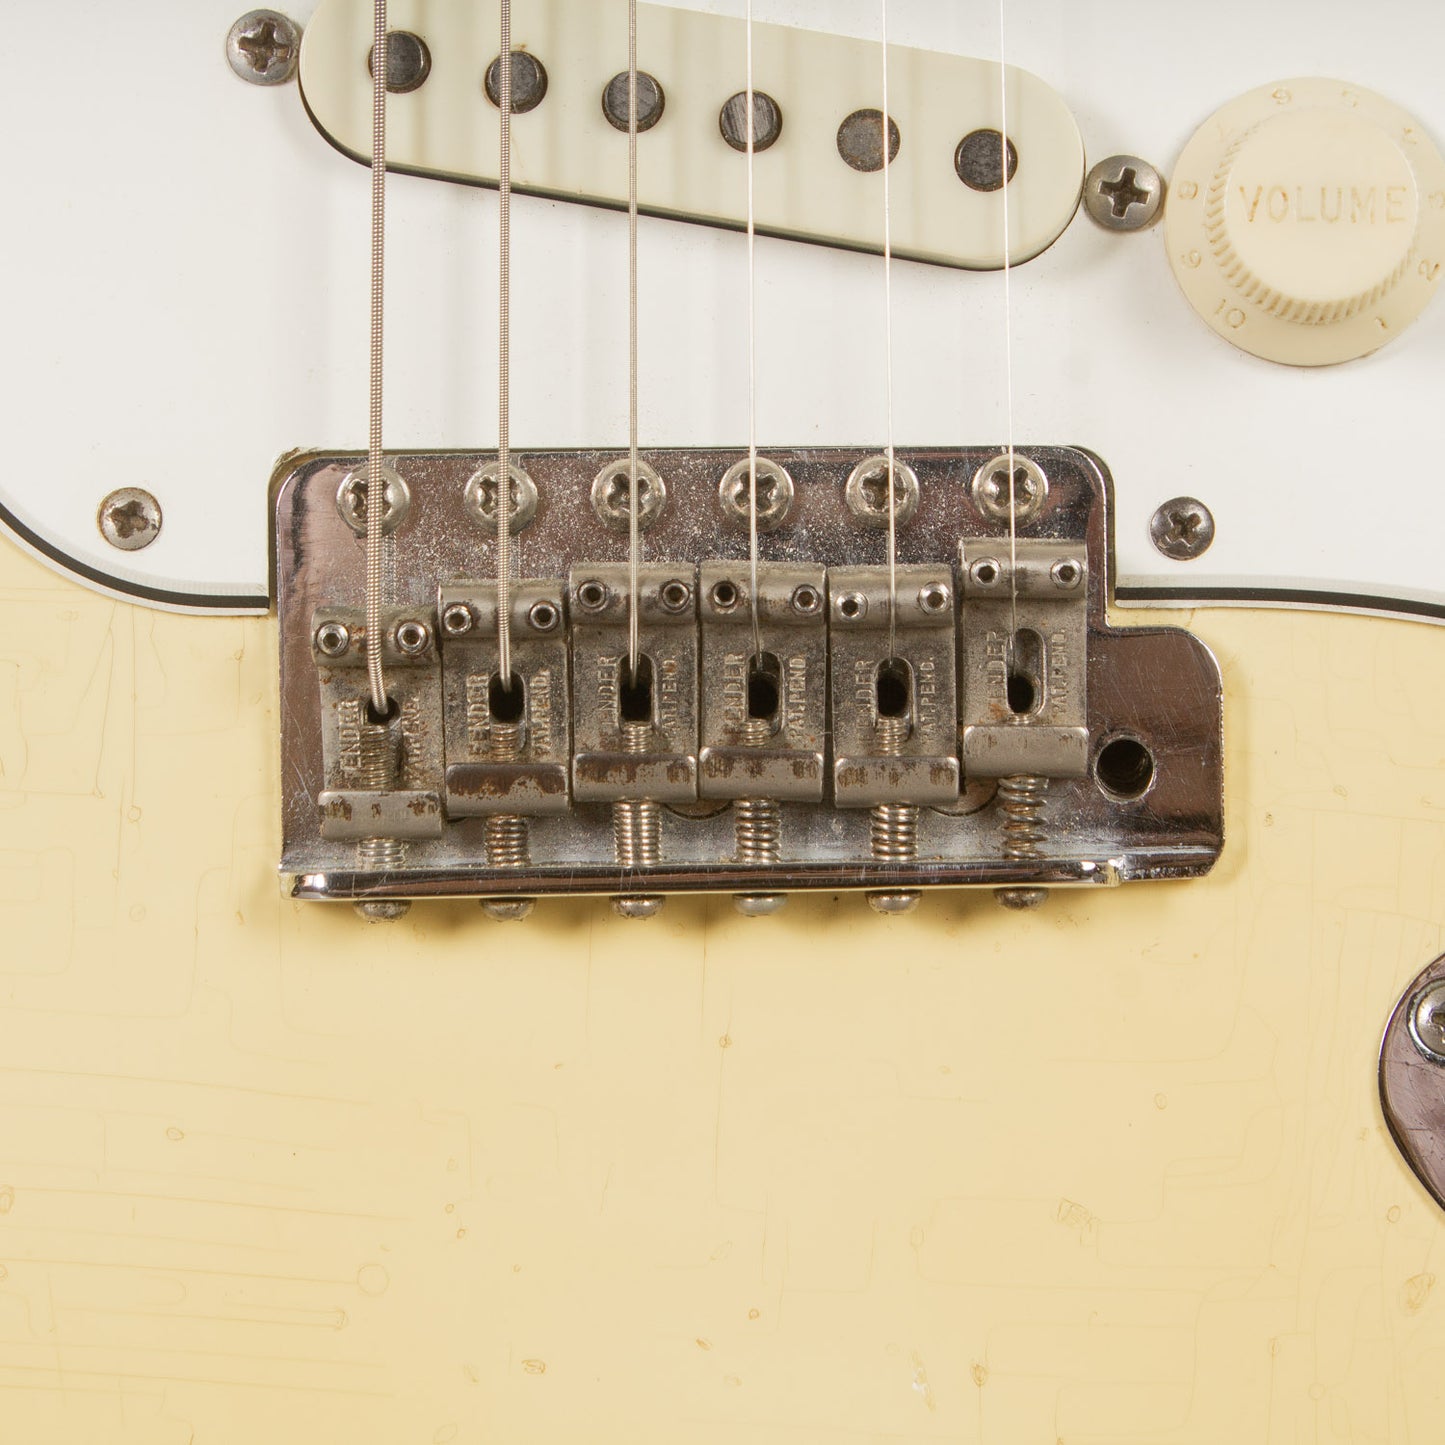 1965 Fender Stratocaster - Olympic White